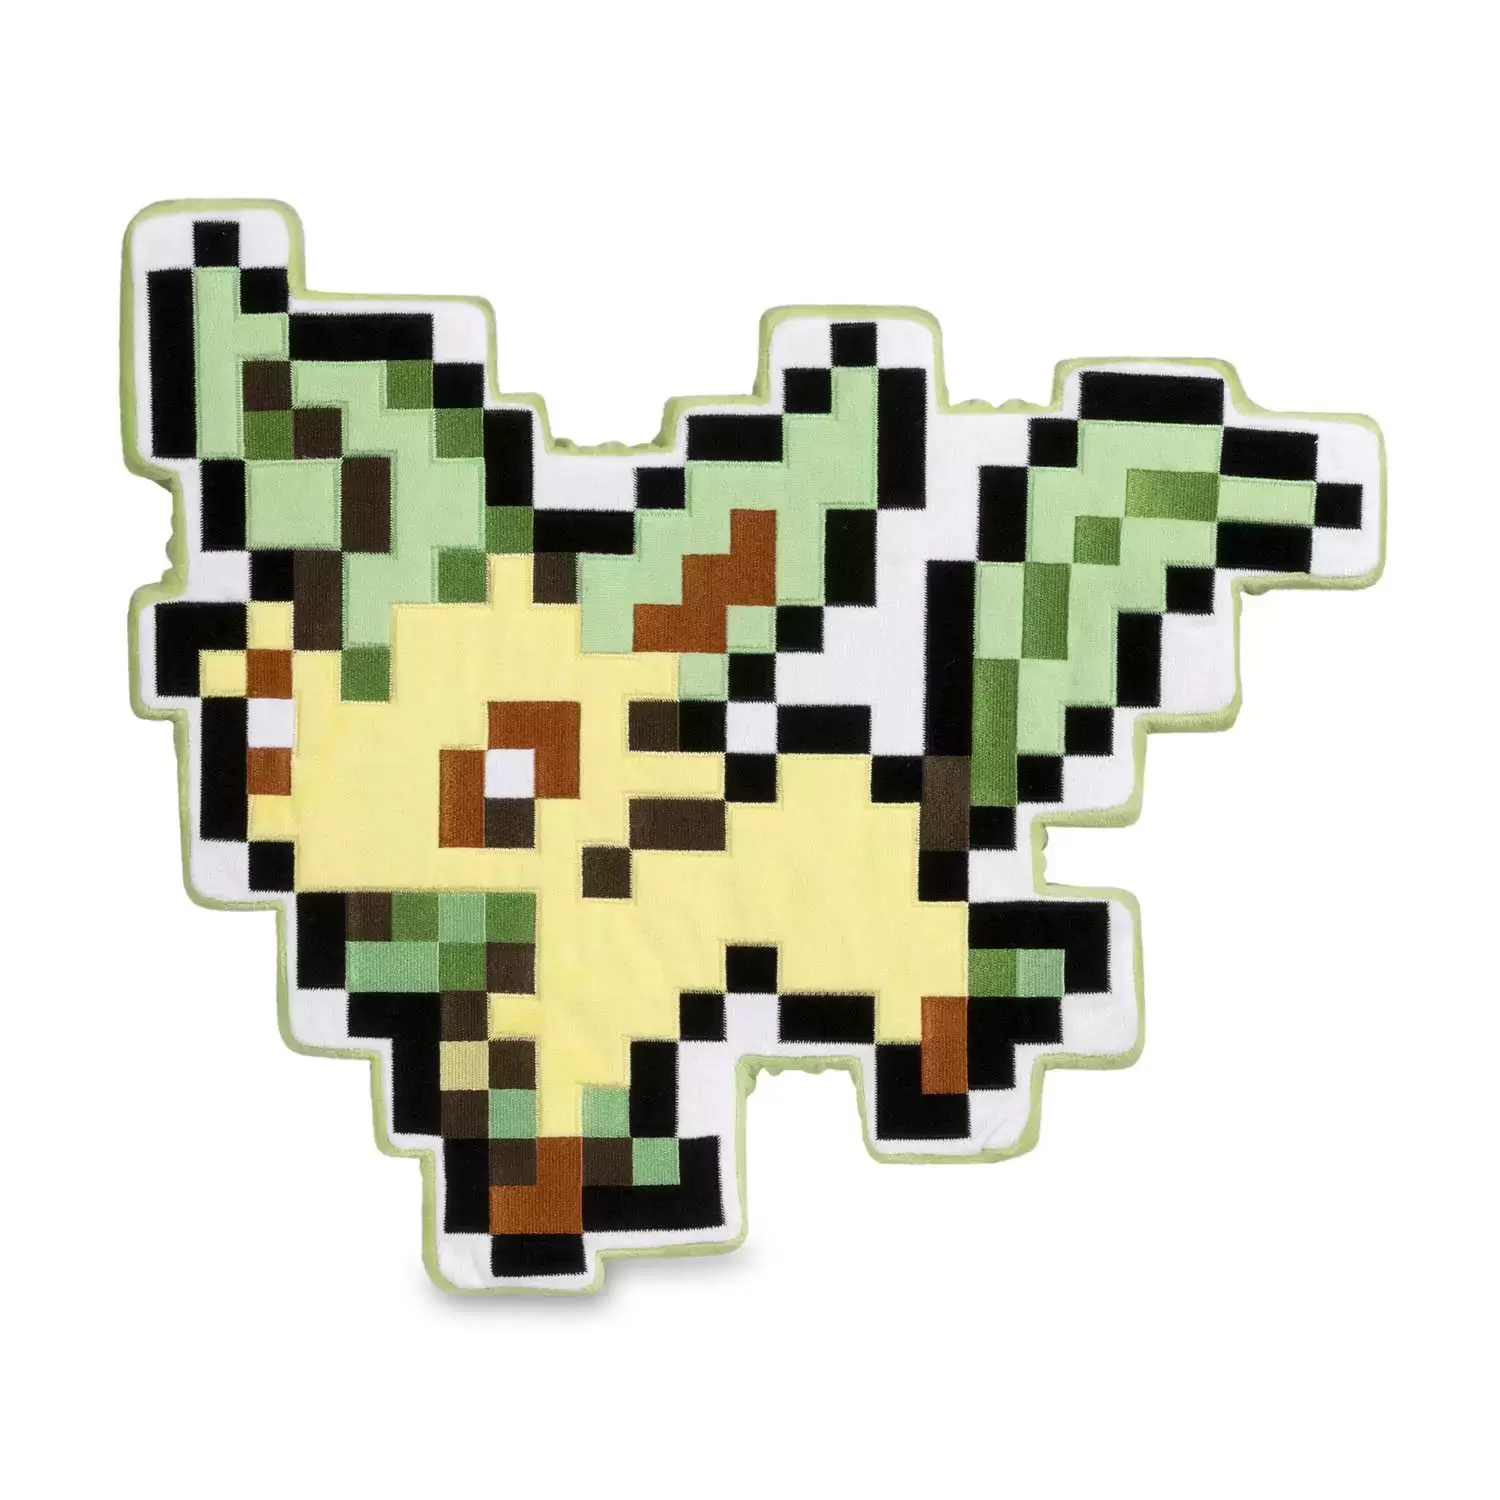 Eevee Pokemon Sticker Pixel Art 